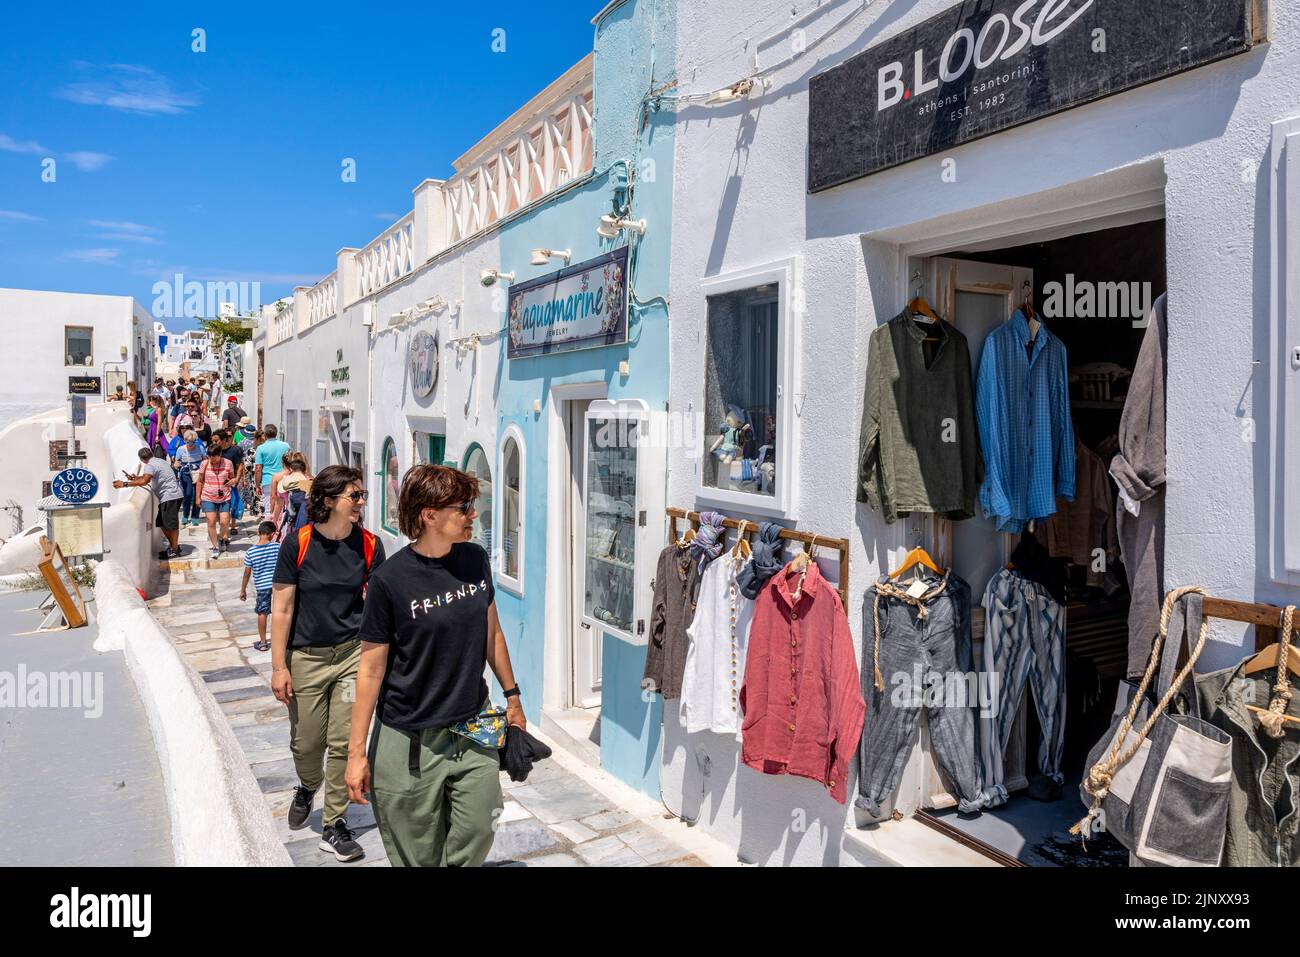 Touristes/visiteurs Shopping dans la ville d'Oia, Santorini, Iles grecques, Grèce. Banque D'Images